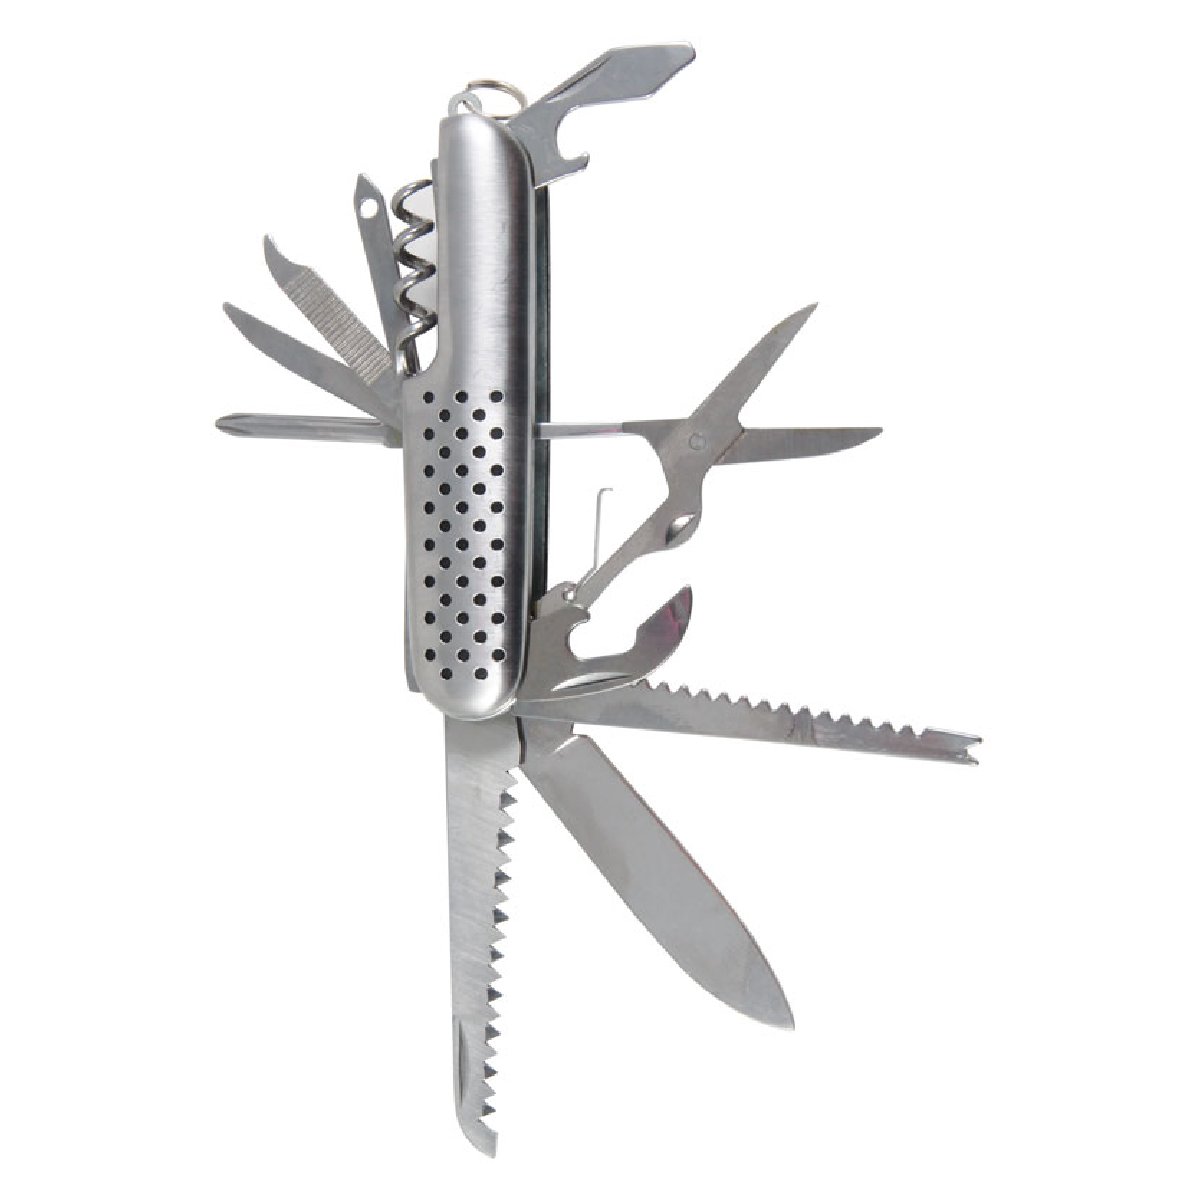 Нож складной многофункциональный Ecos SR061 11 в 1, 17.5см, нержавеющая сталь, блистер (325111)